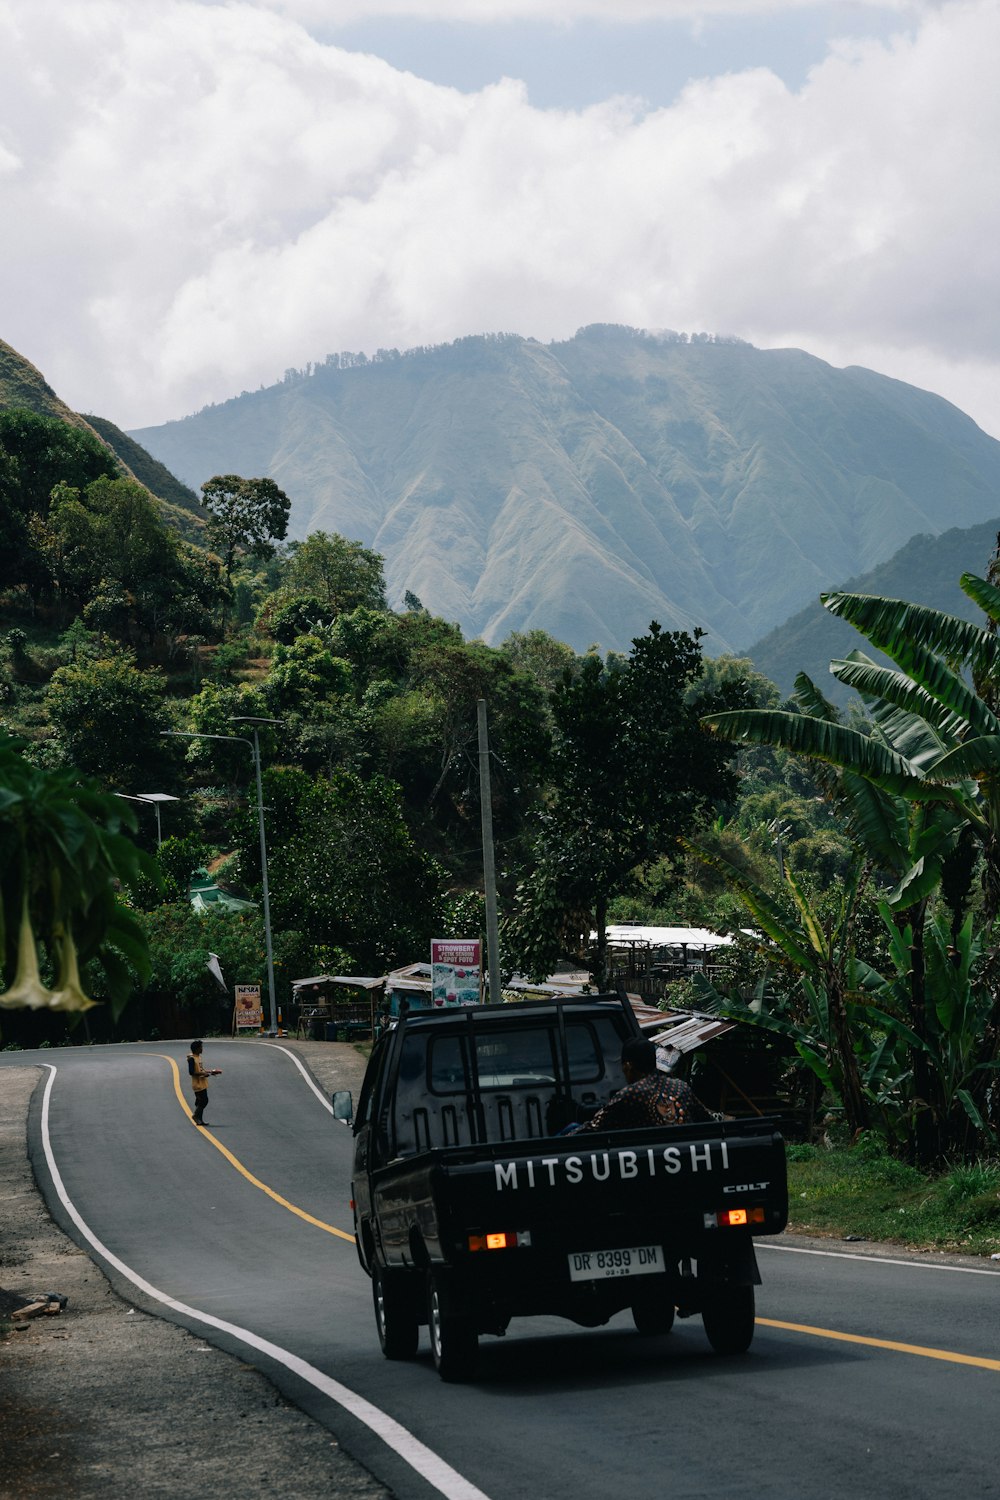 Un camion che percorre una strada con una montagna sullo sfondo